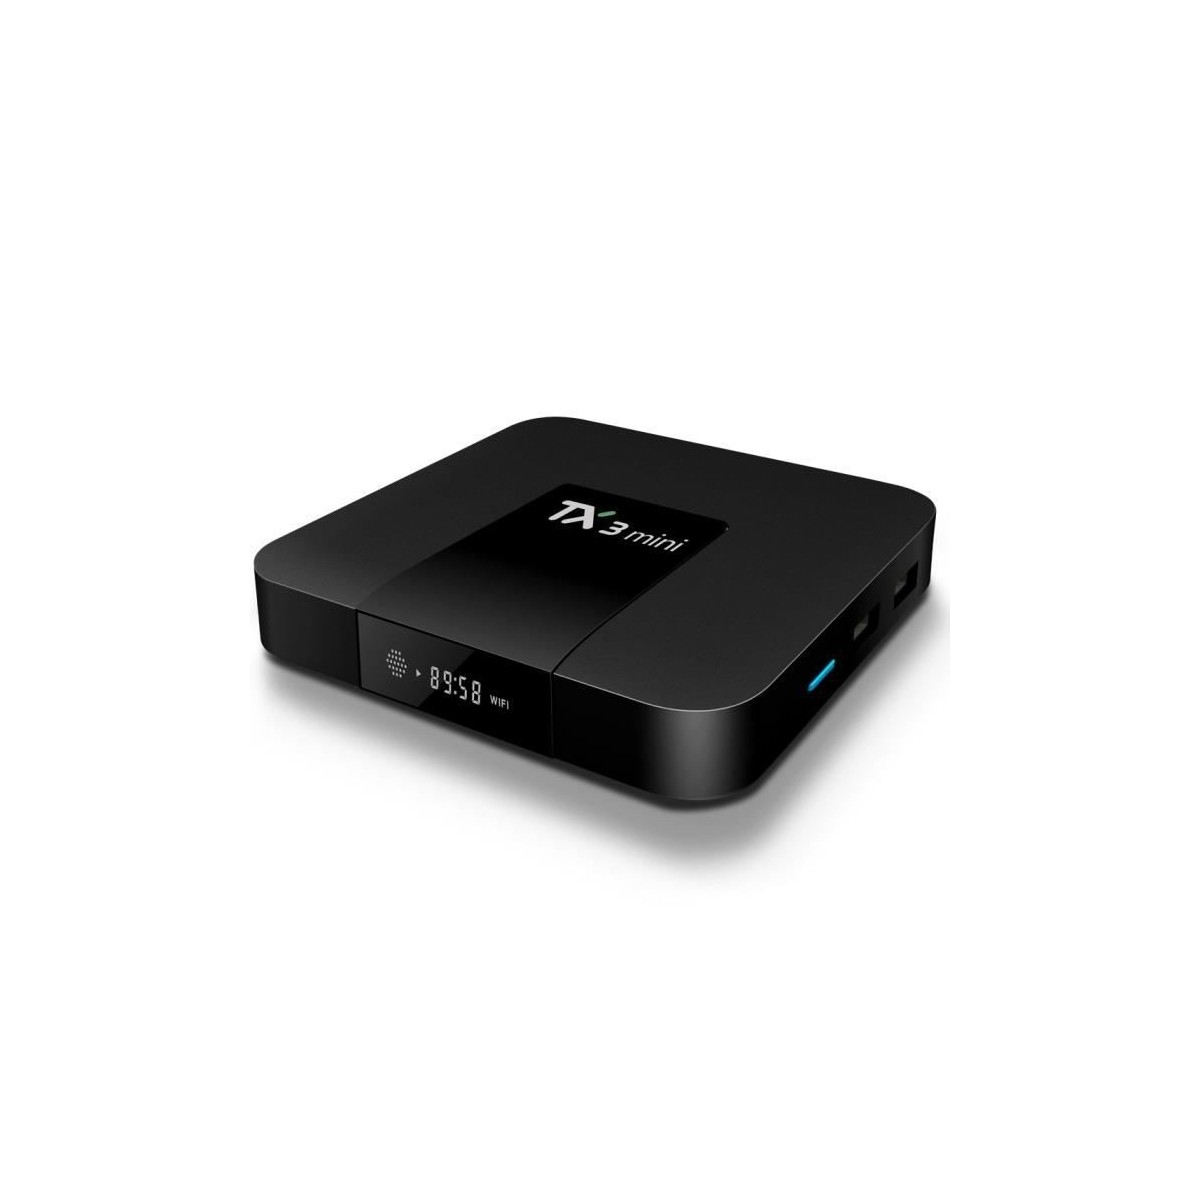 Décodeur multimédias Smart TV Box Android 7.1 TX3 Mini 1G-8G